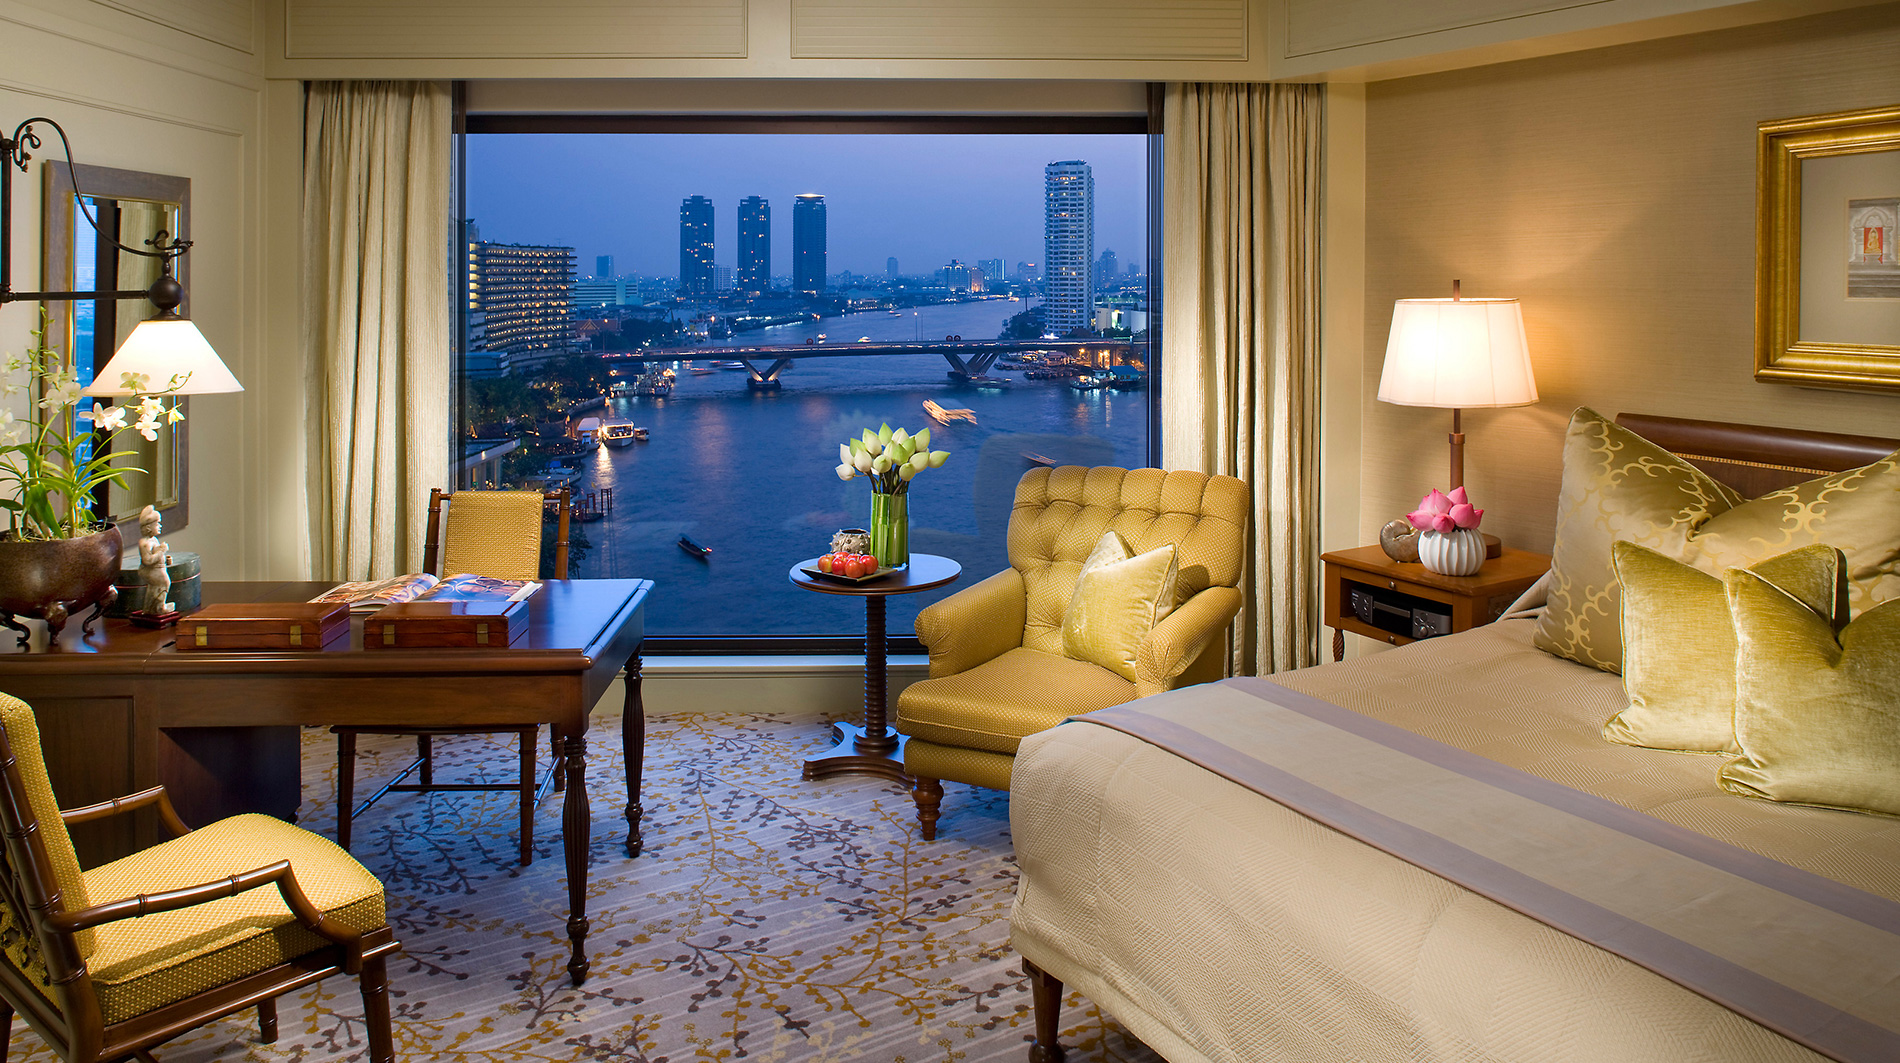 曼谷帝国皇后公园万豪酒店 (曼谷) - Bangkok Marriott Marquis Queen’s Park - 酒店预订 /预定 - 3506条旅客点评与比价 - Tripadvisor猫途鹰